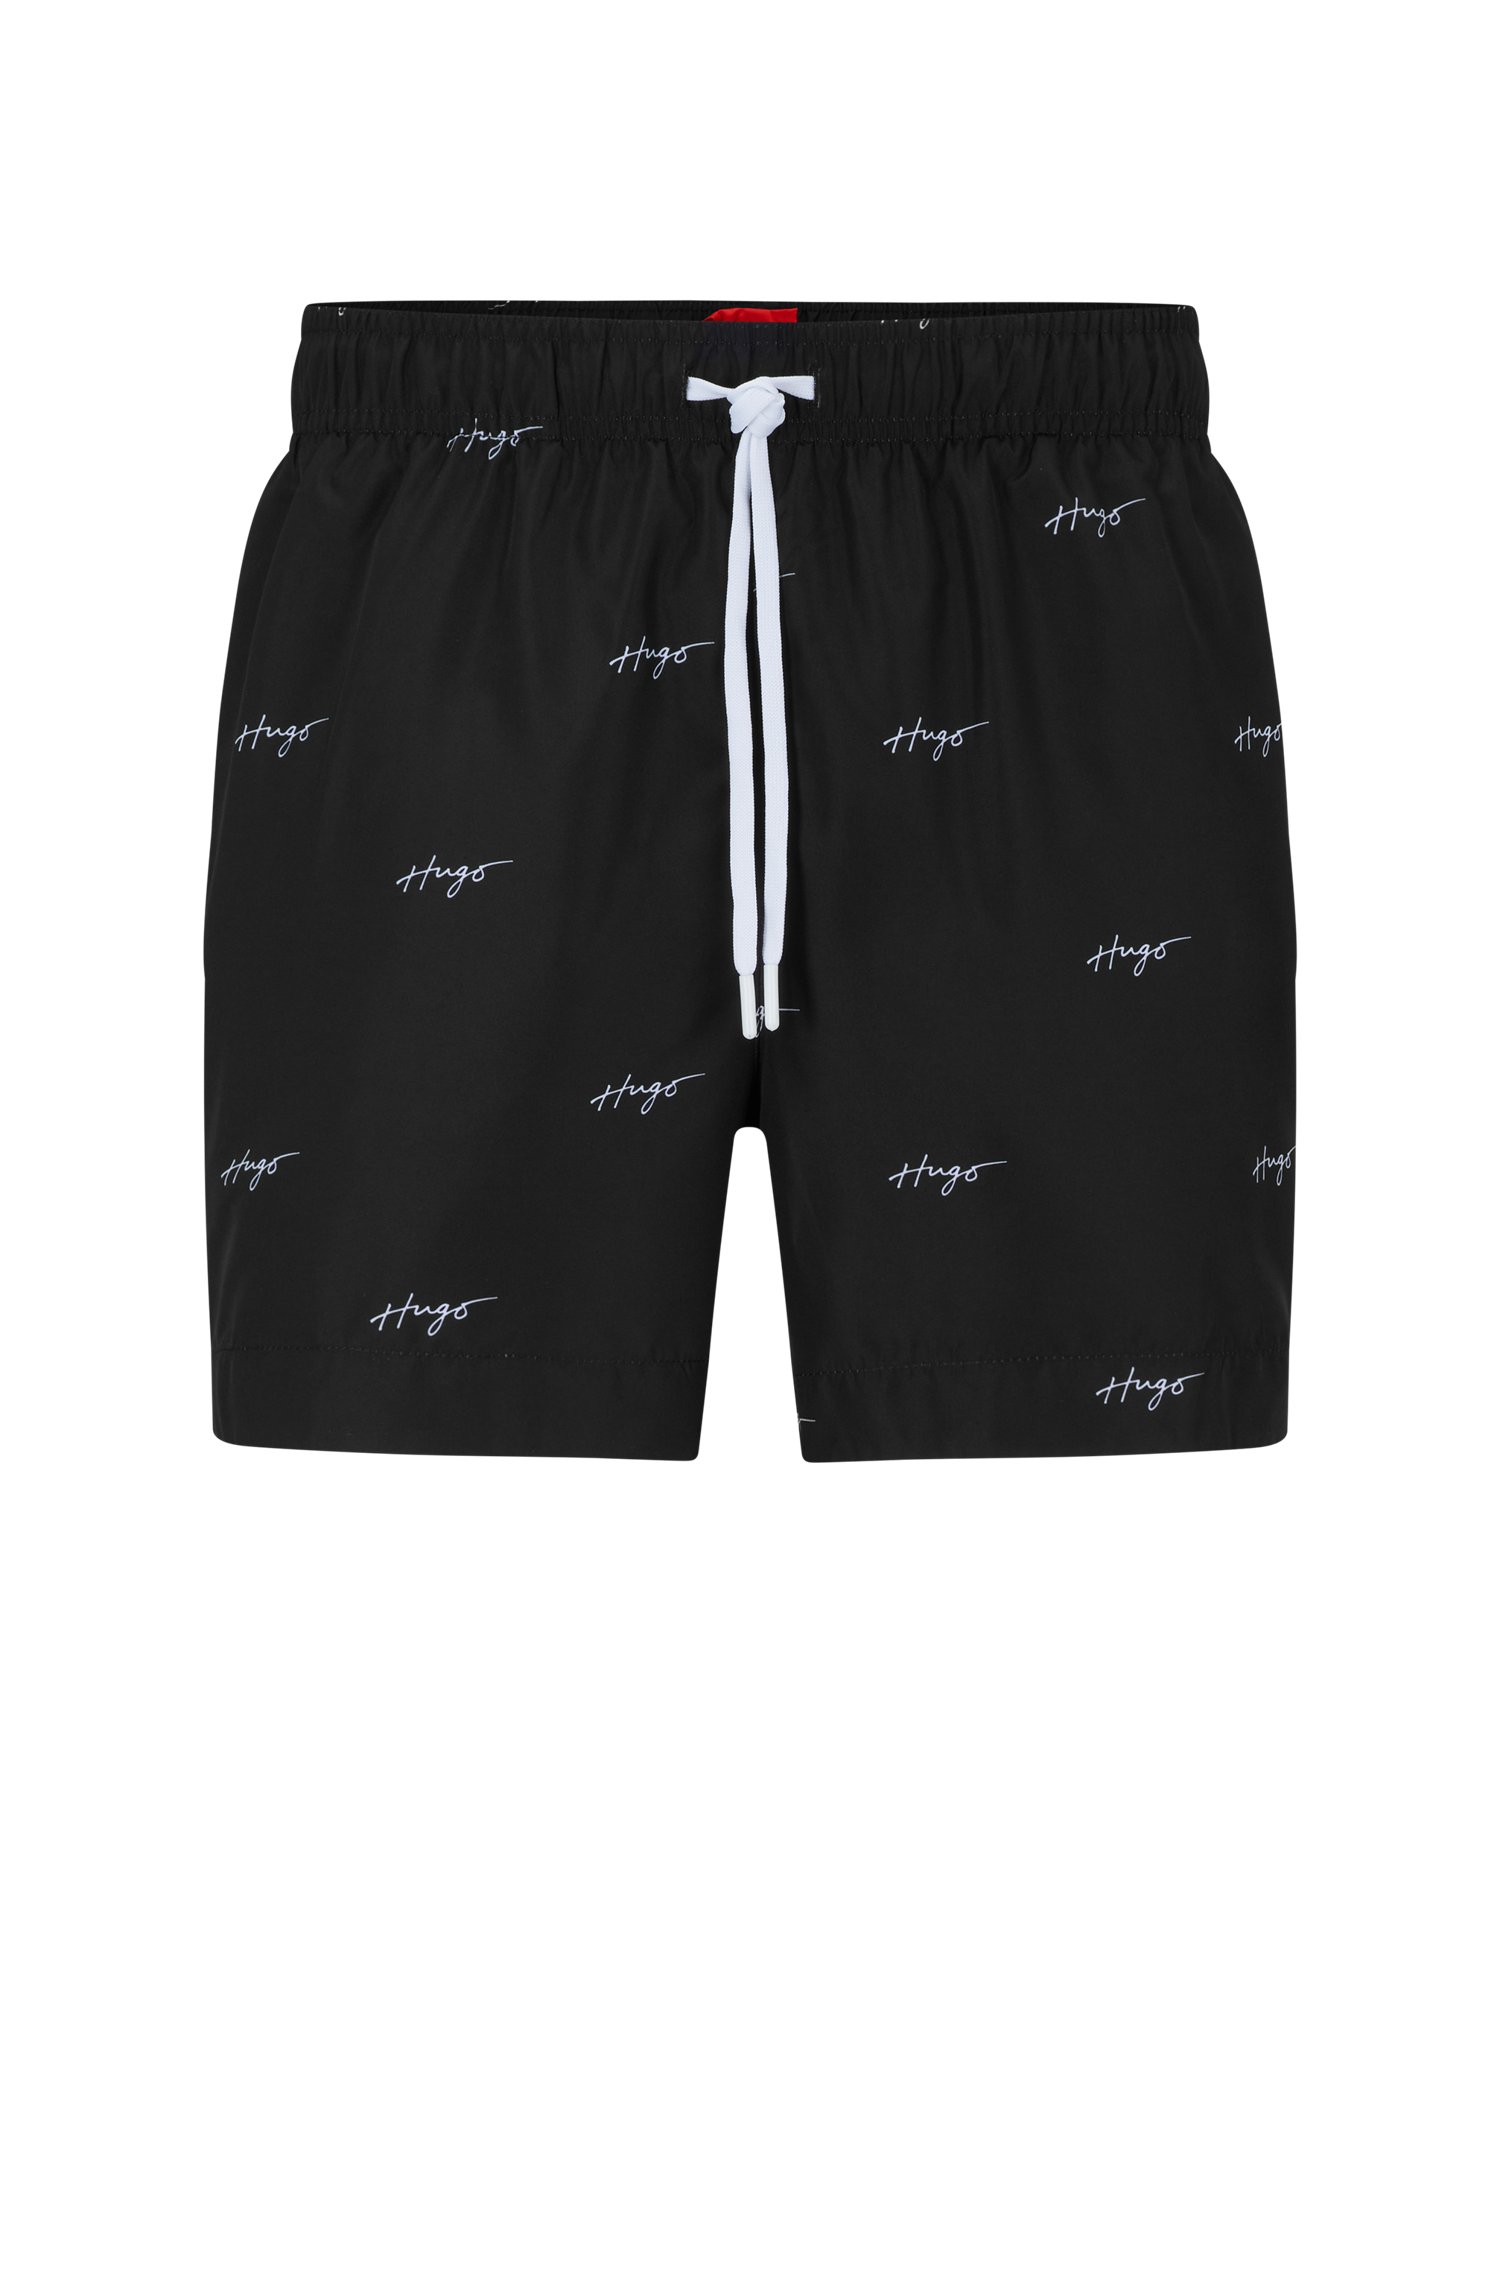 Bañador tipo shorts de tejido secado rápido con logos caligrafiados